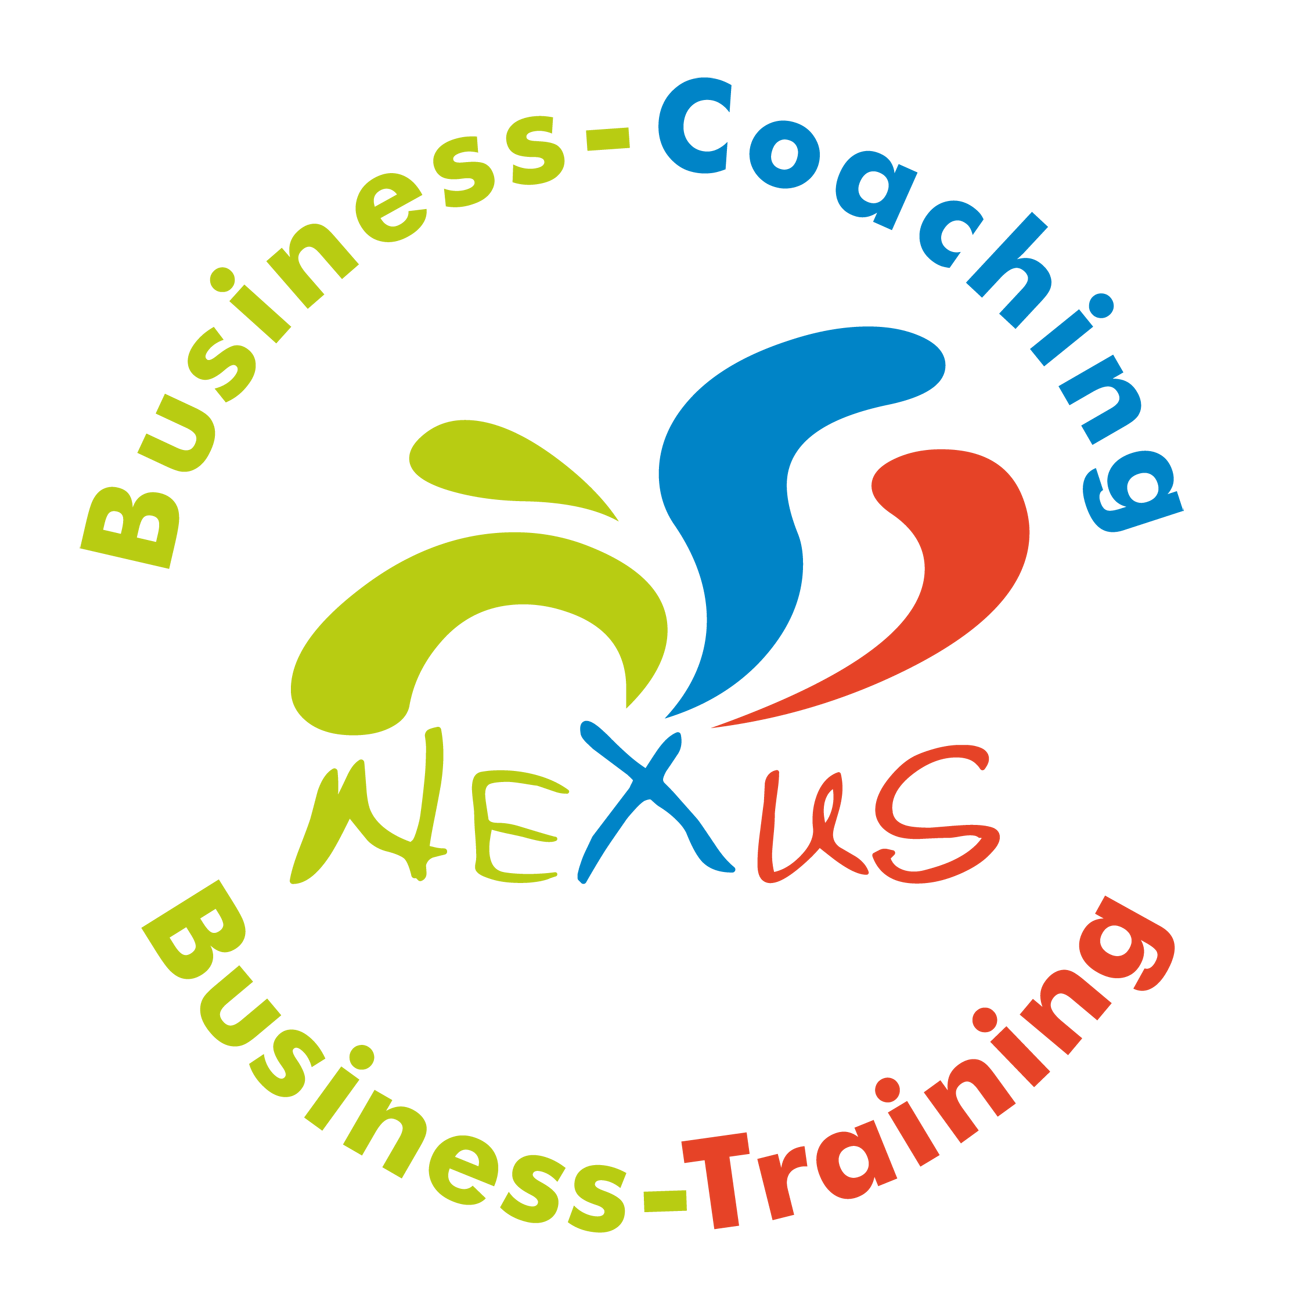 Business-Coaching Langen, Business-Einzelcoaching, Business-Training, Führungskräfte-Coaching Langen, Führungskräfte-Training, Kommunikationstraining, Persönlichkeitstraining